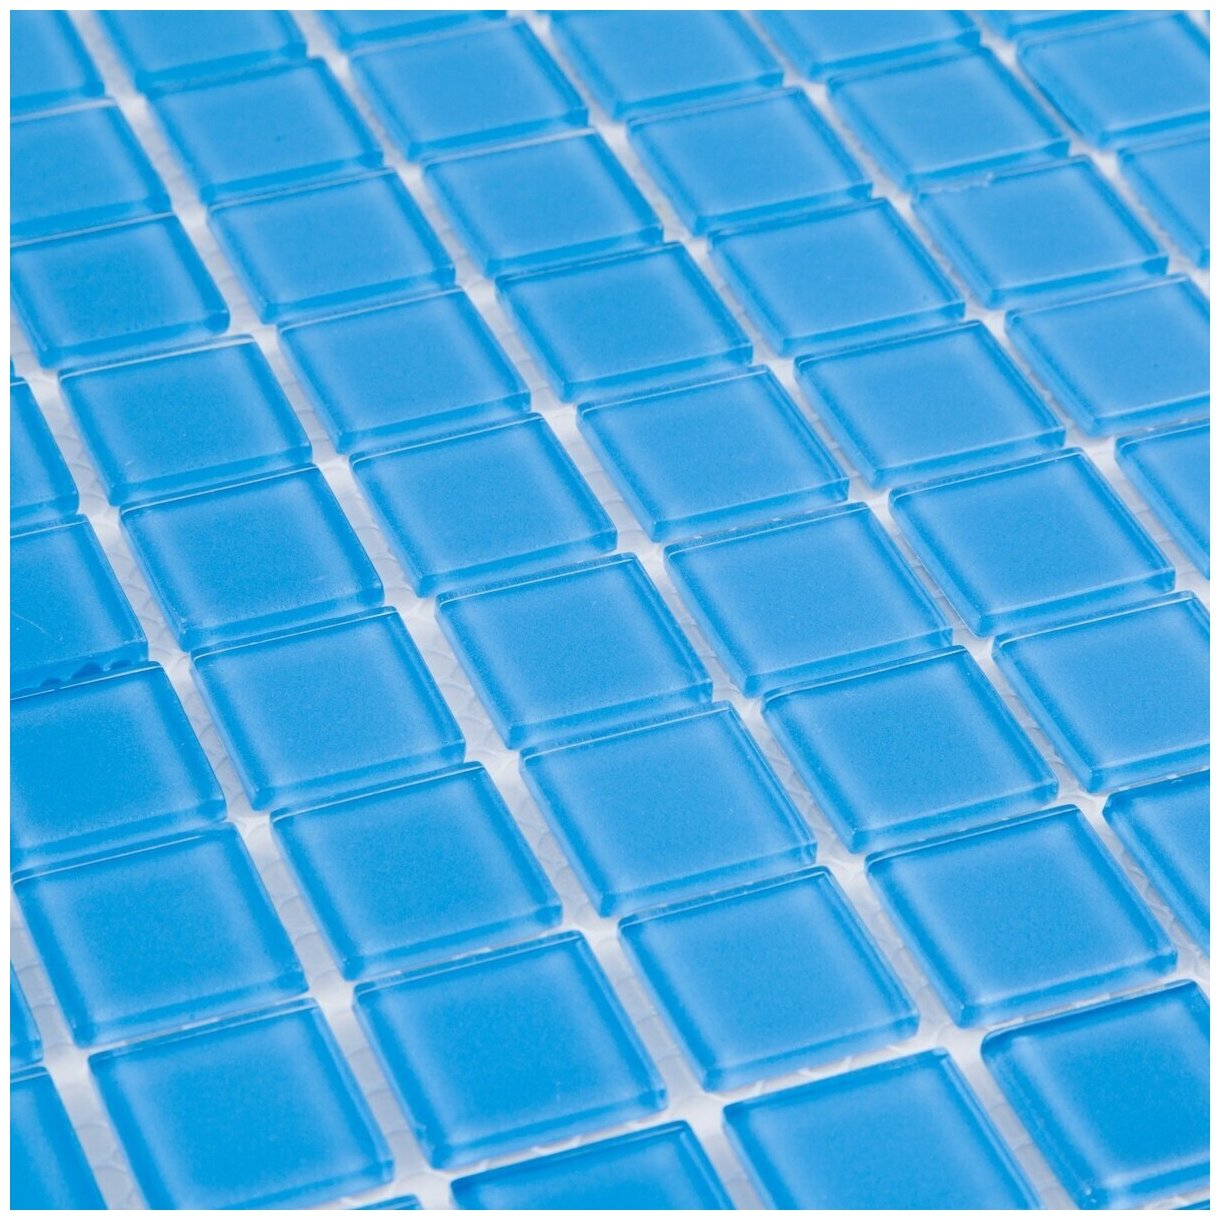 Стеклянная мозаика DAO-108-23-4. Размер 300х300мм. Толщина 4мм. Цвет синий/голубой. 1 лист. Площадь 0.09м2